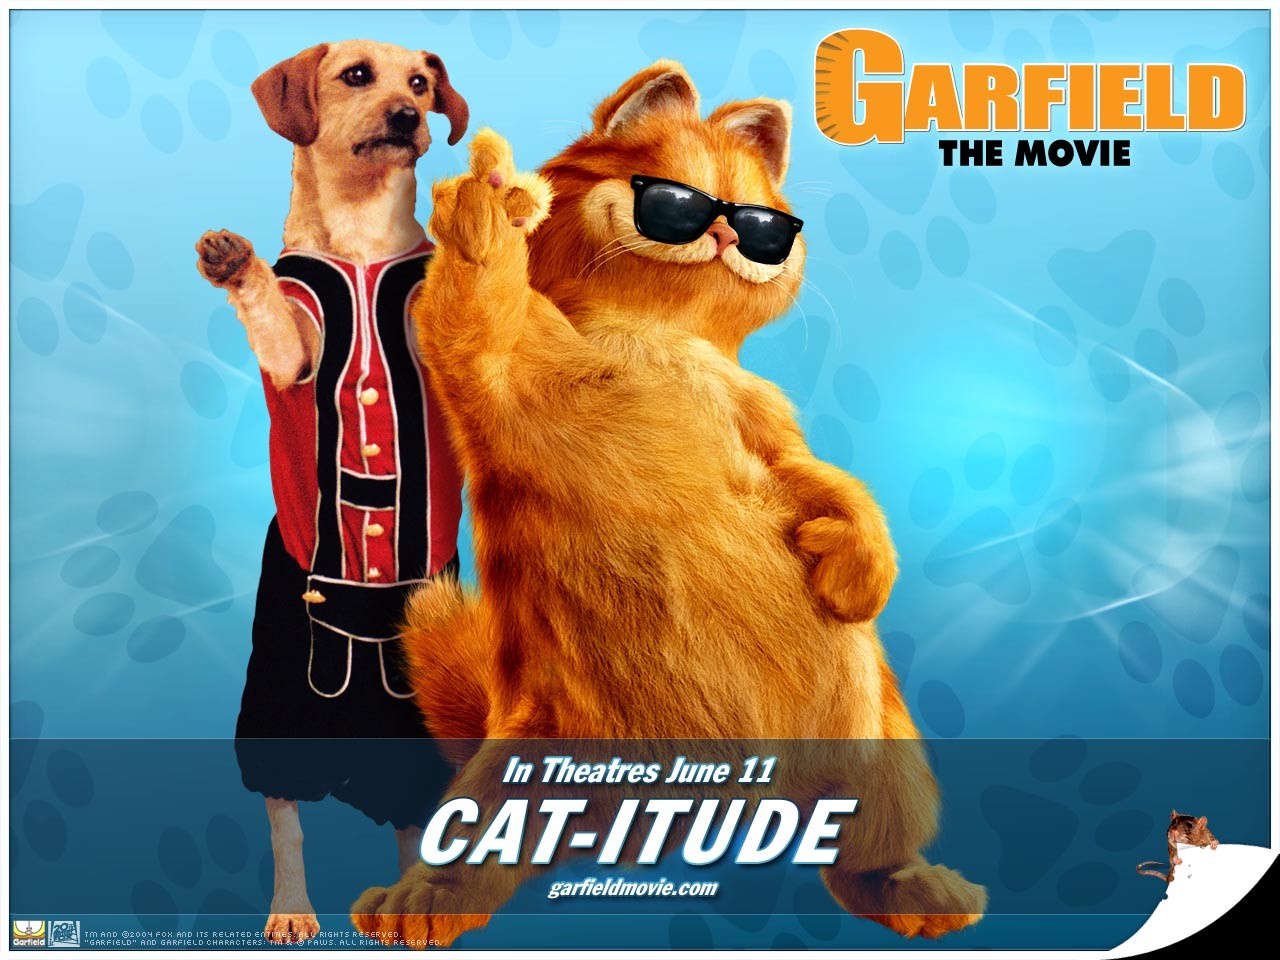 "Garfield" desktop wallpaper number 2 (1280 x 960 pixels)